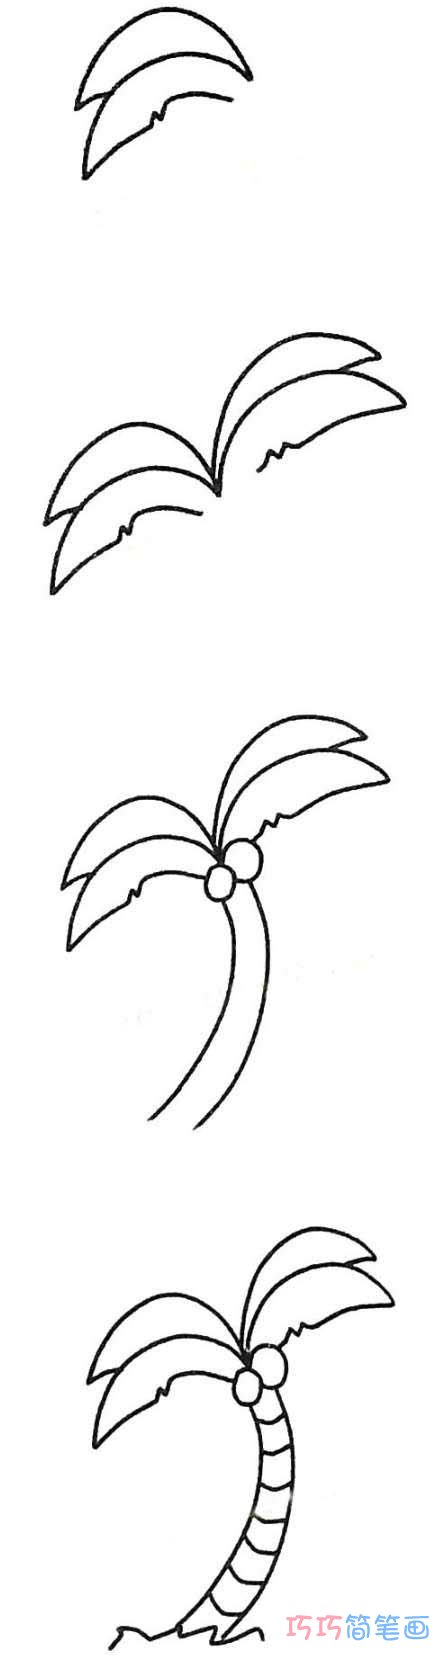 幼儿简笔画椰子树的画法步骤图简单